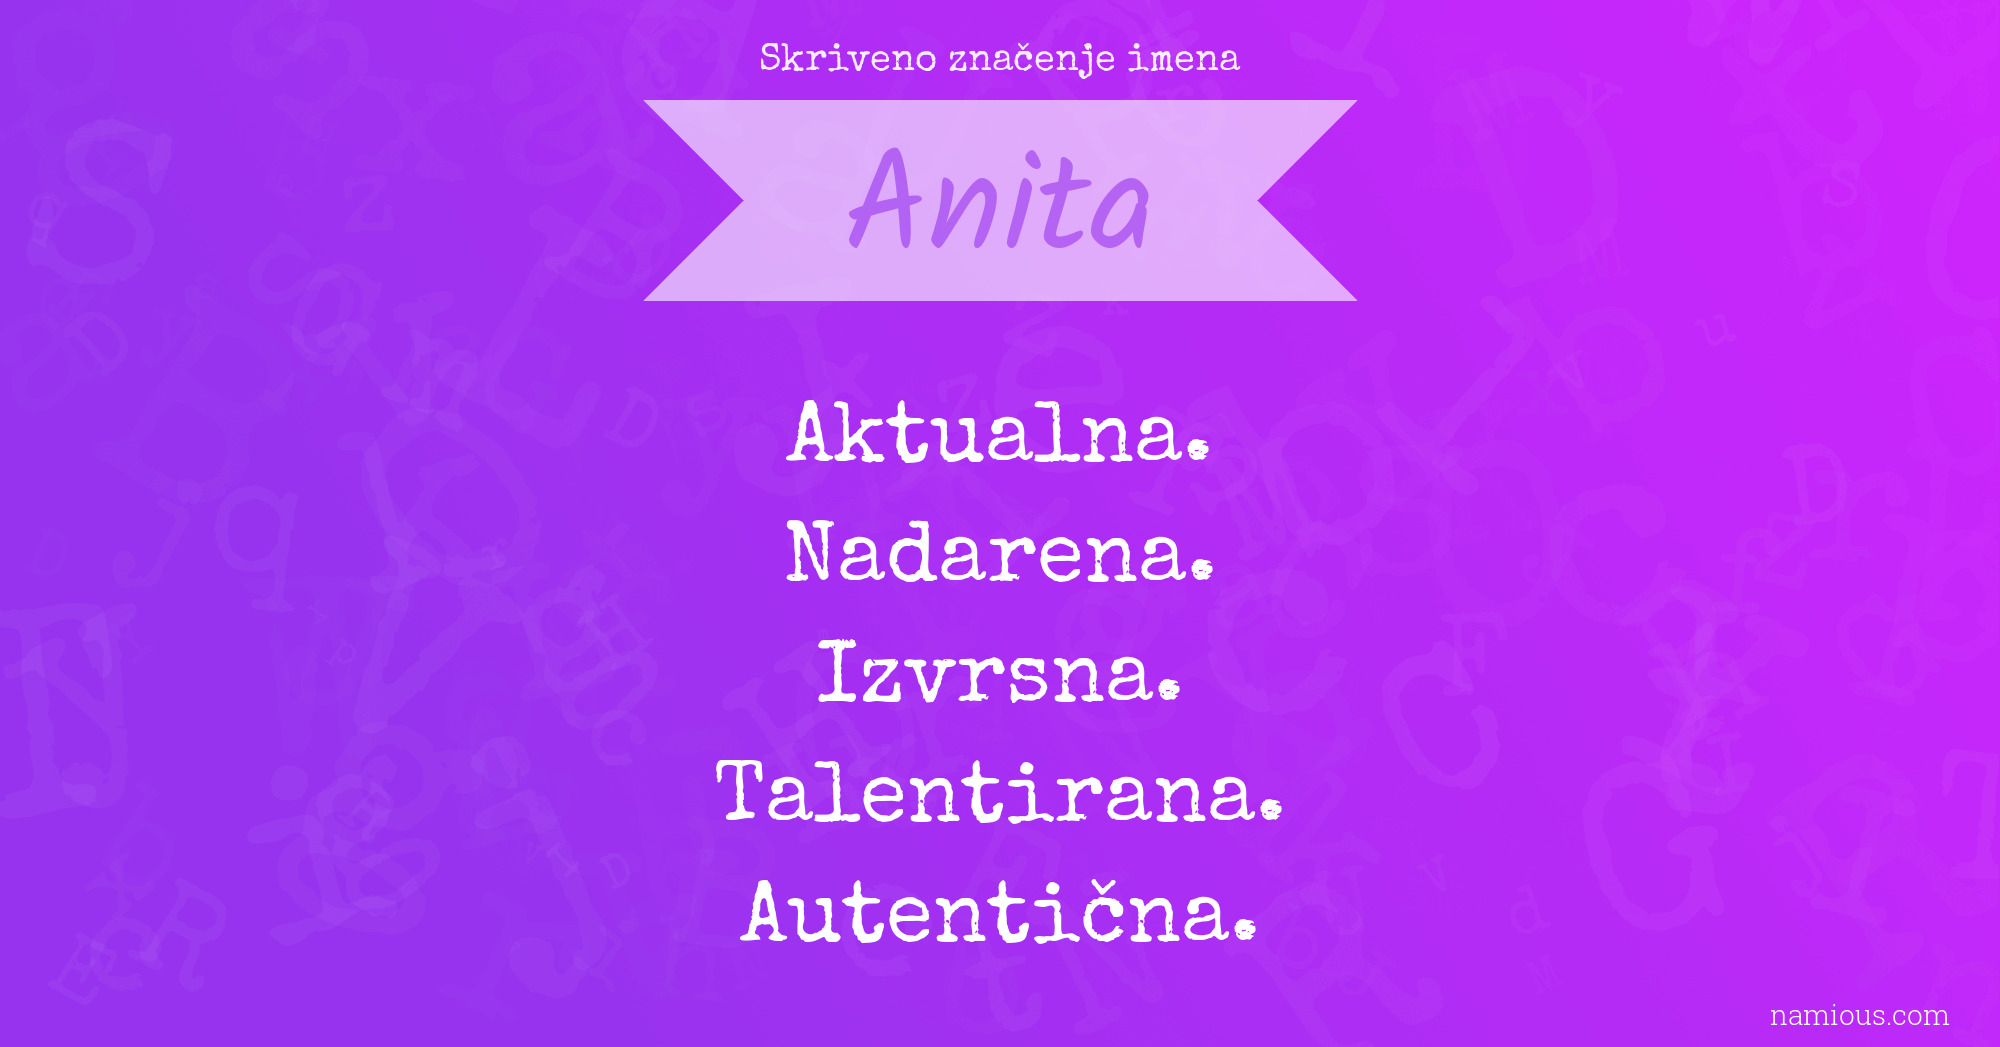 Skriveno značenje imena Anita